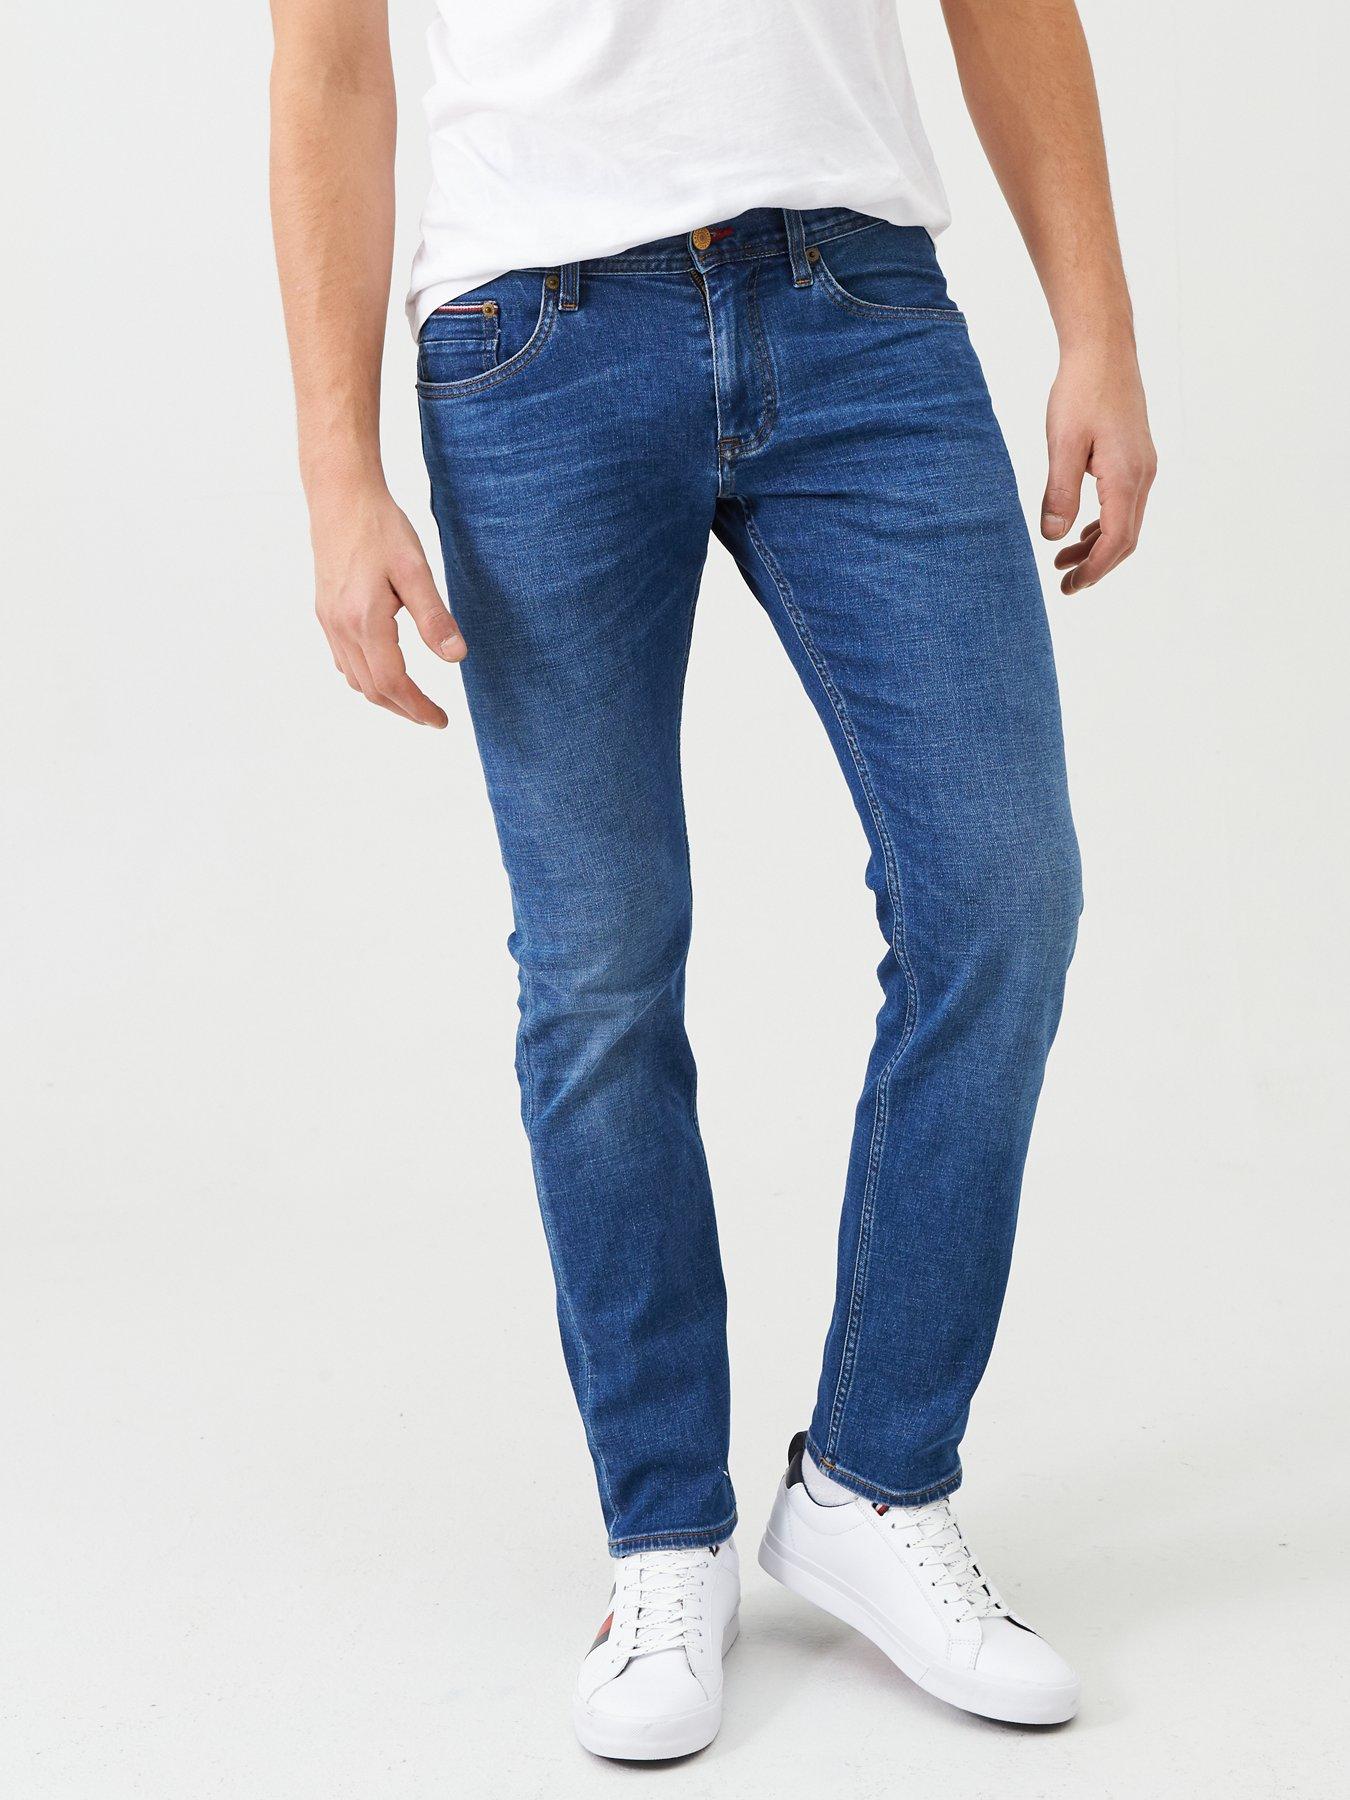 hilfiger jeans bleecker